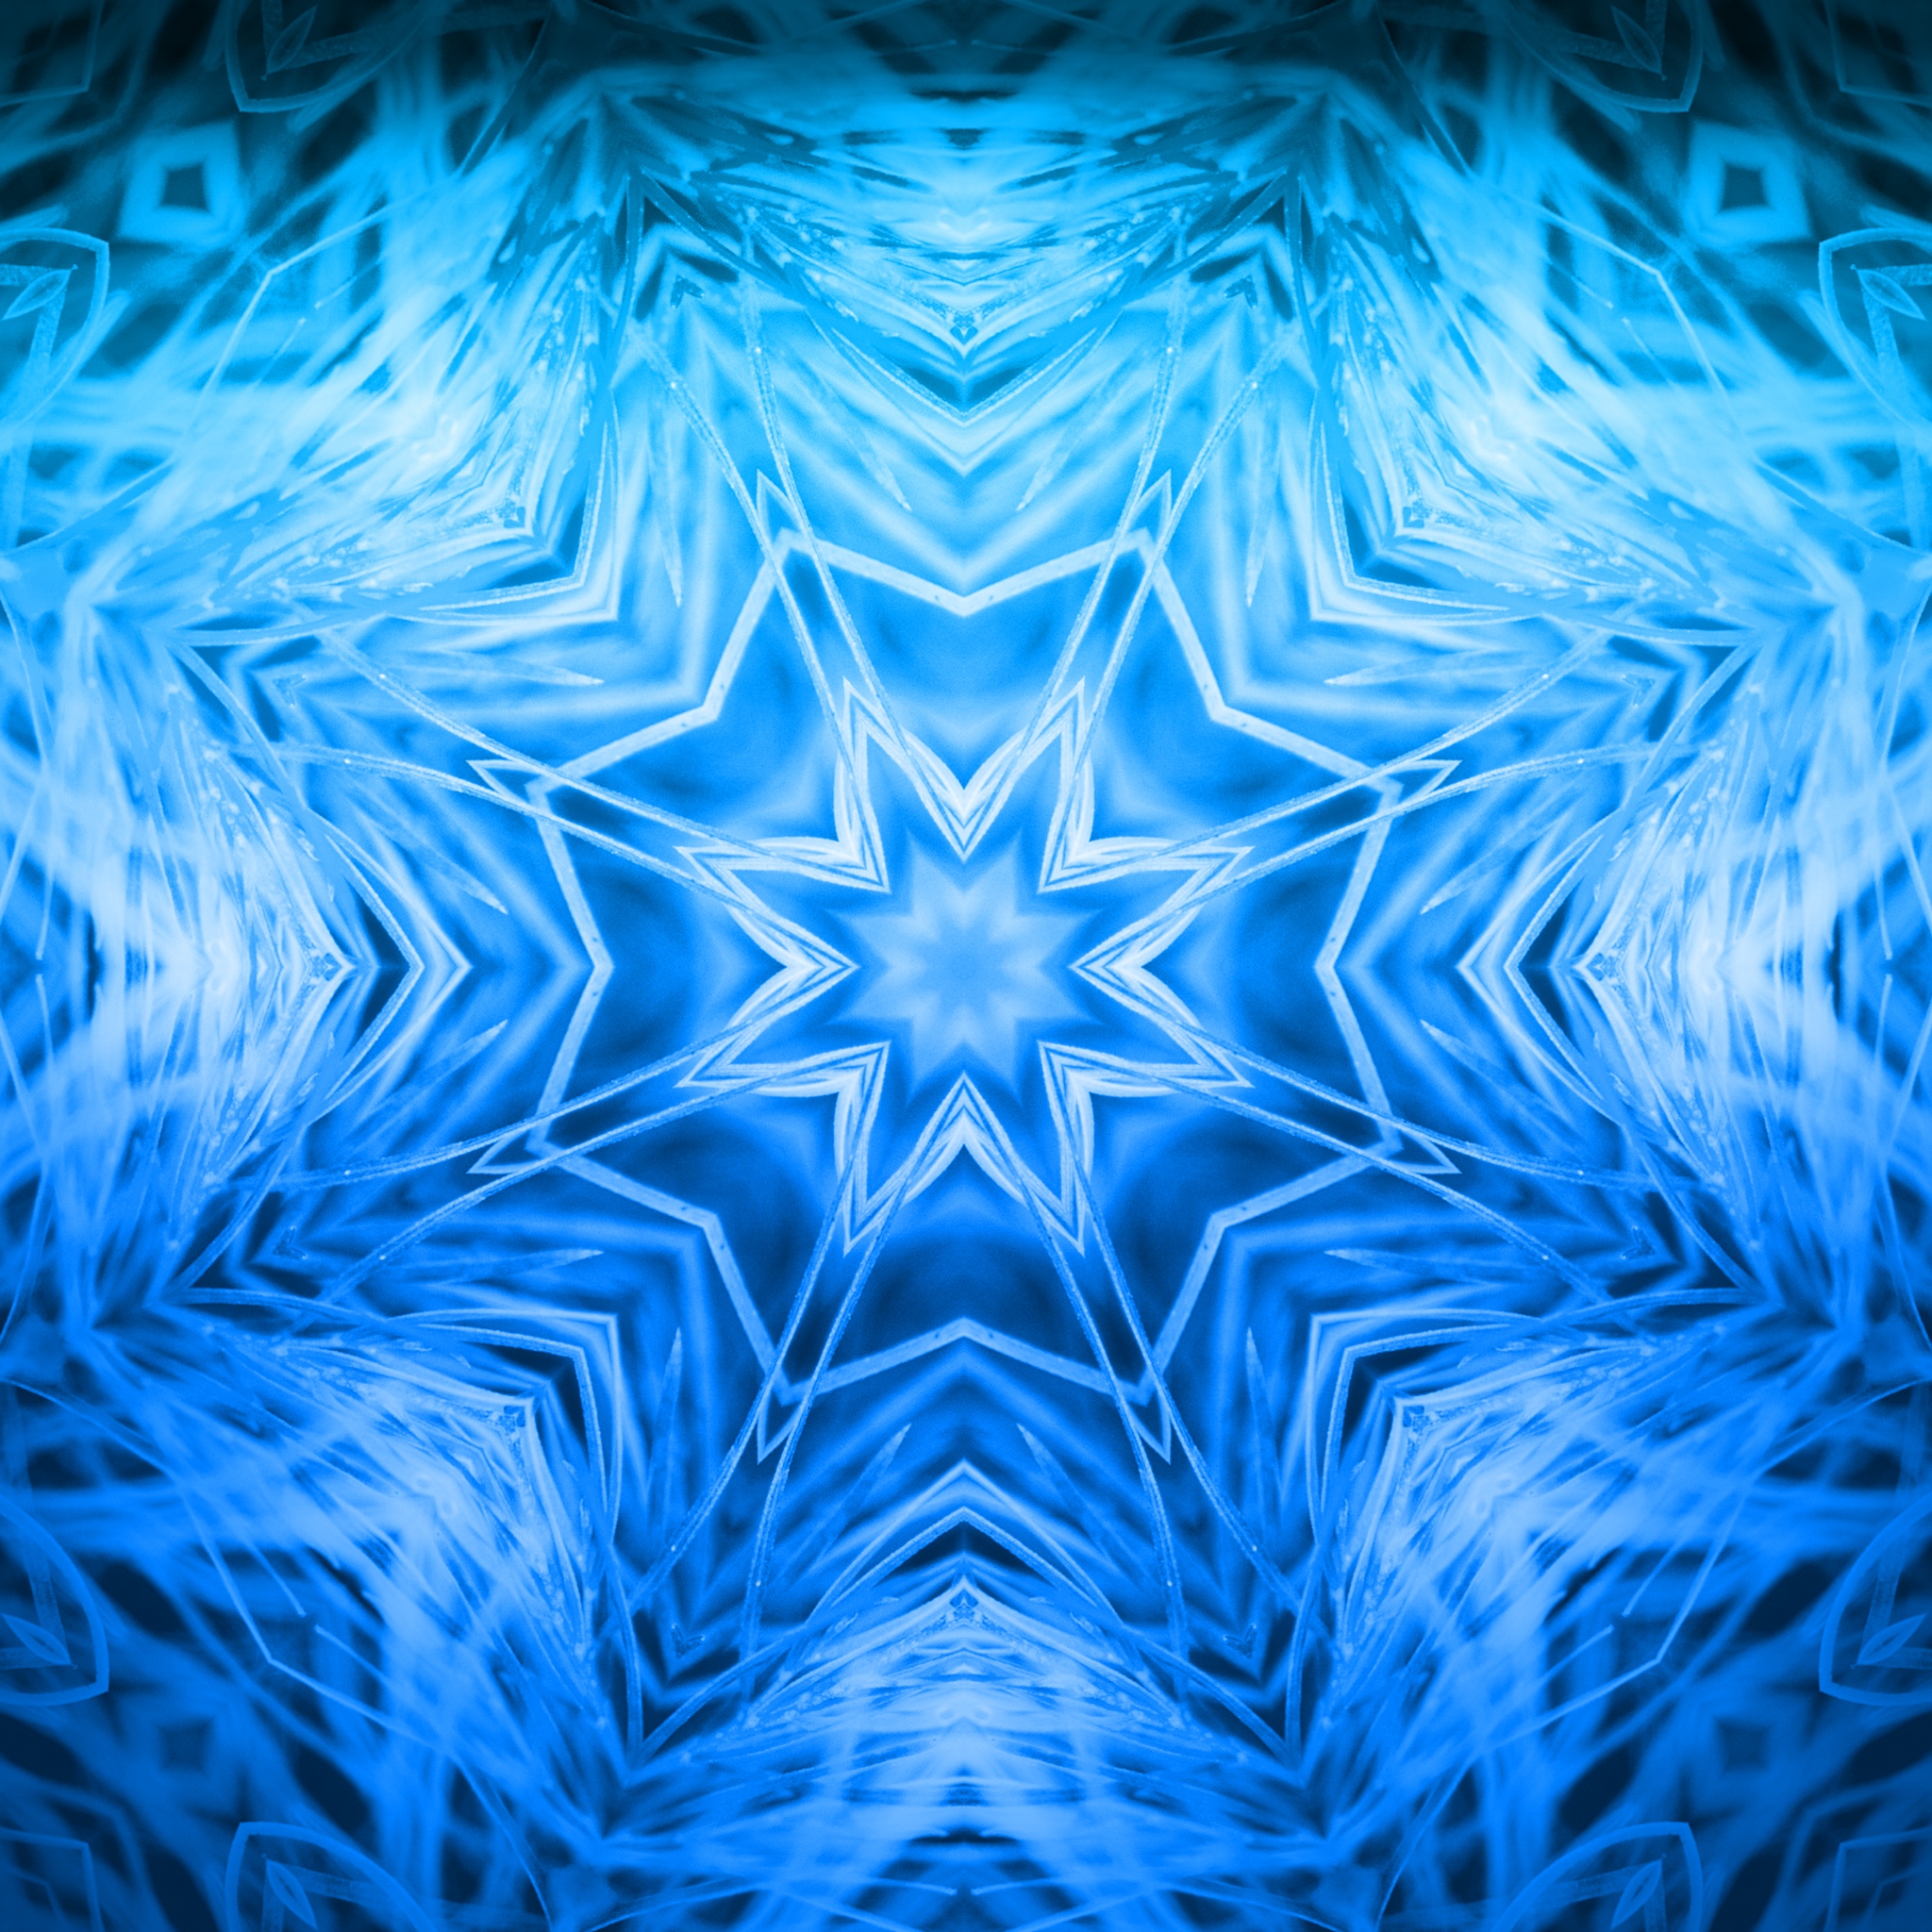 hochauflösende abstrakte tapete,blau,kobaltblau,elektrisches blau,muster,aqua